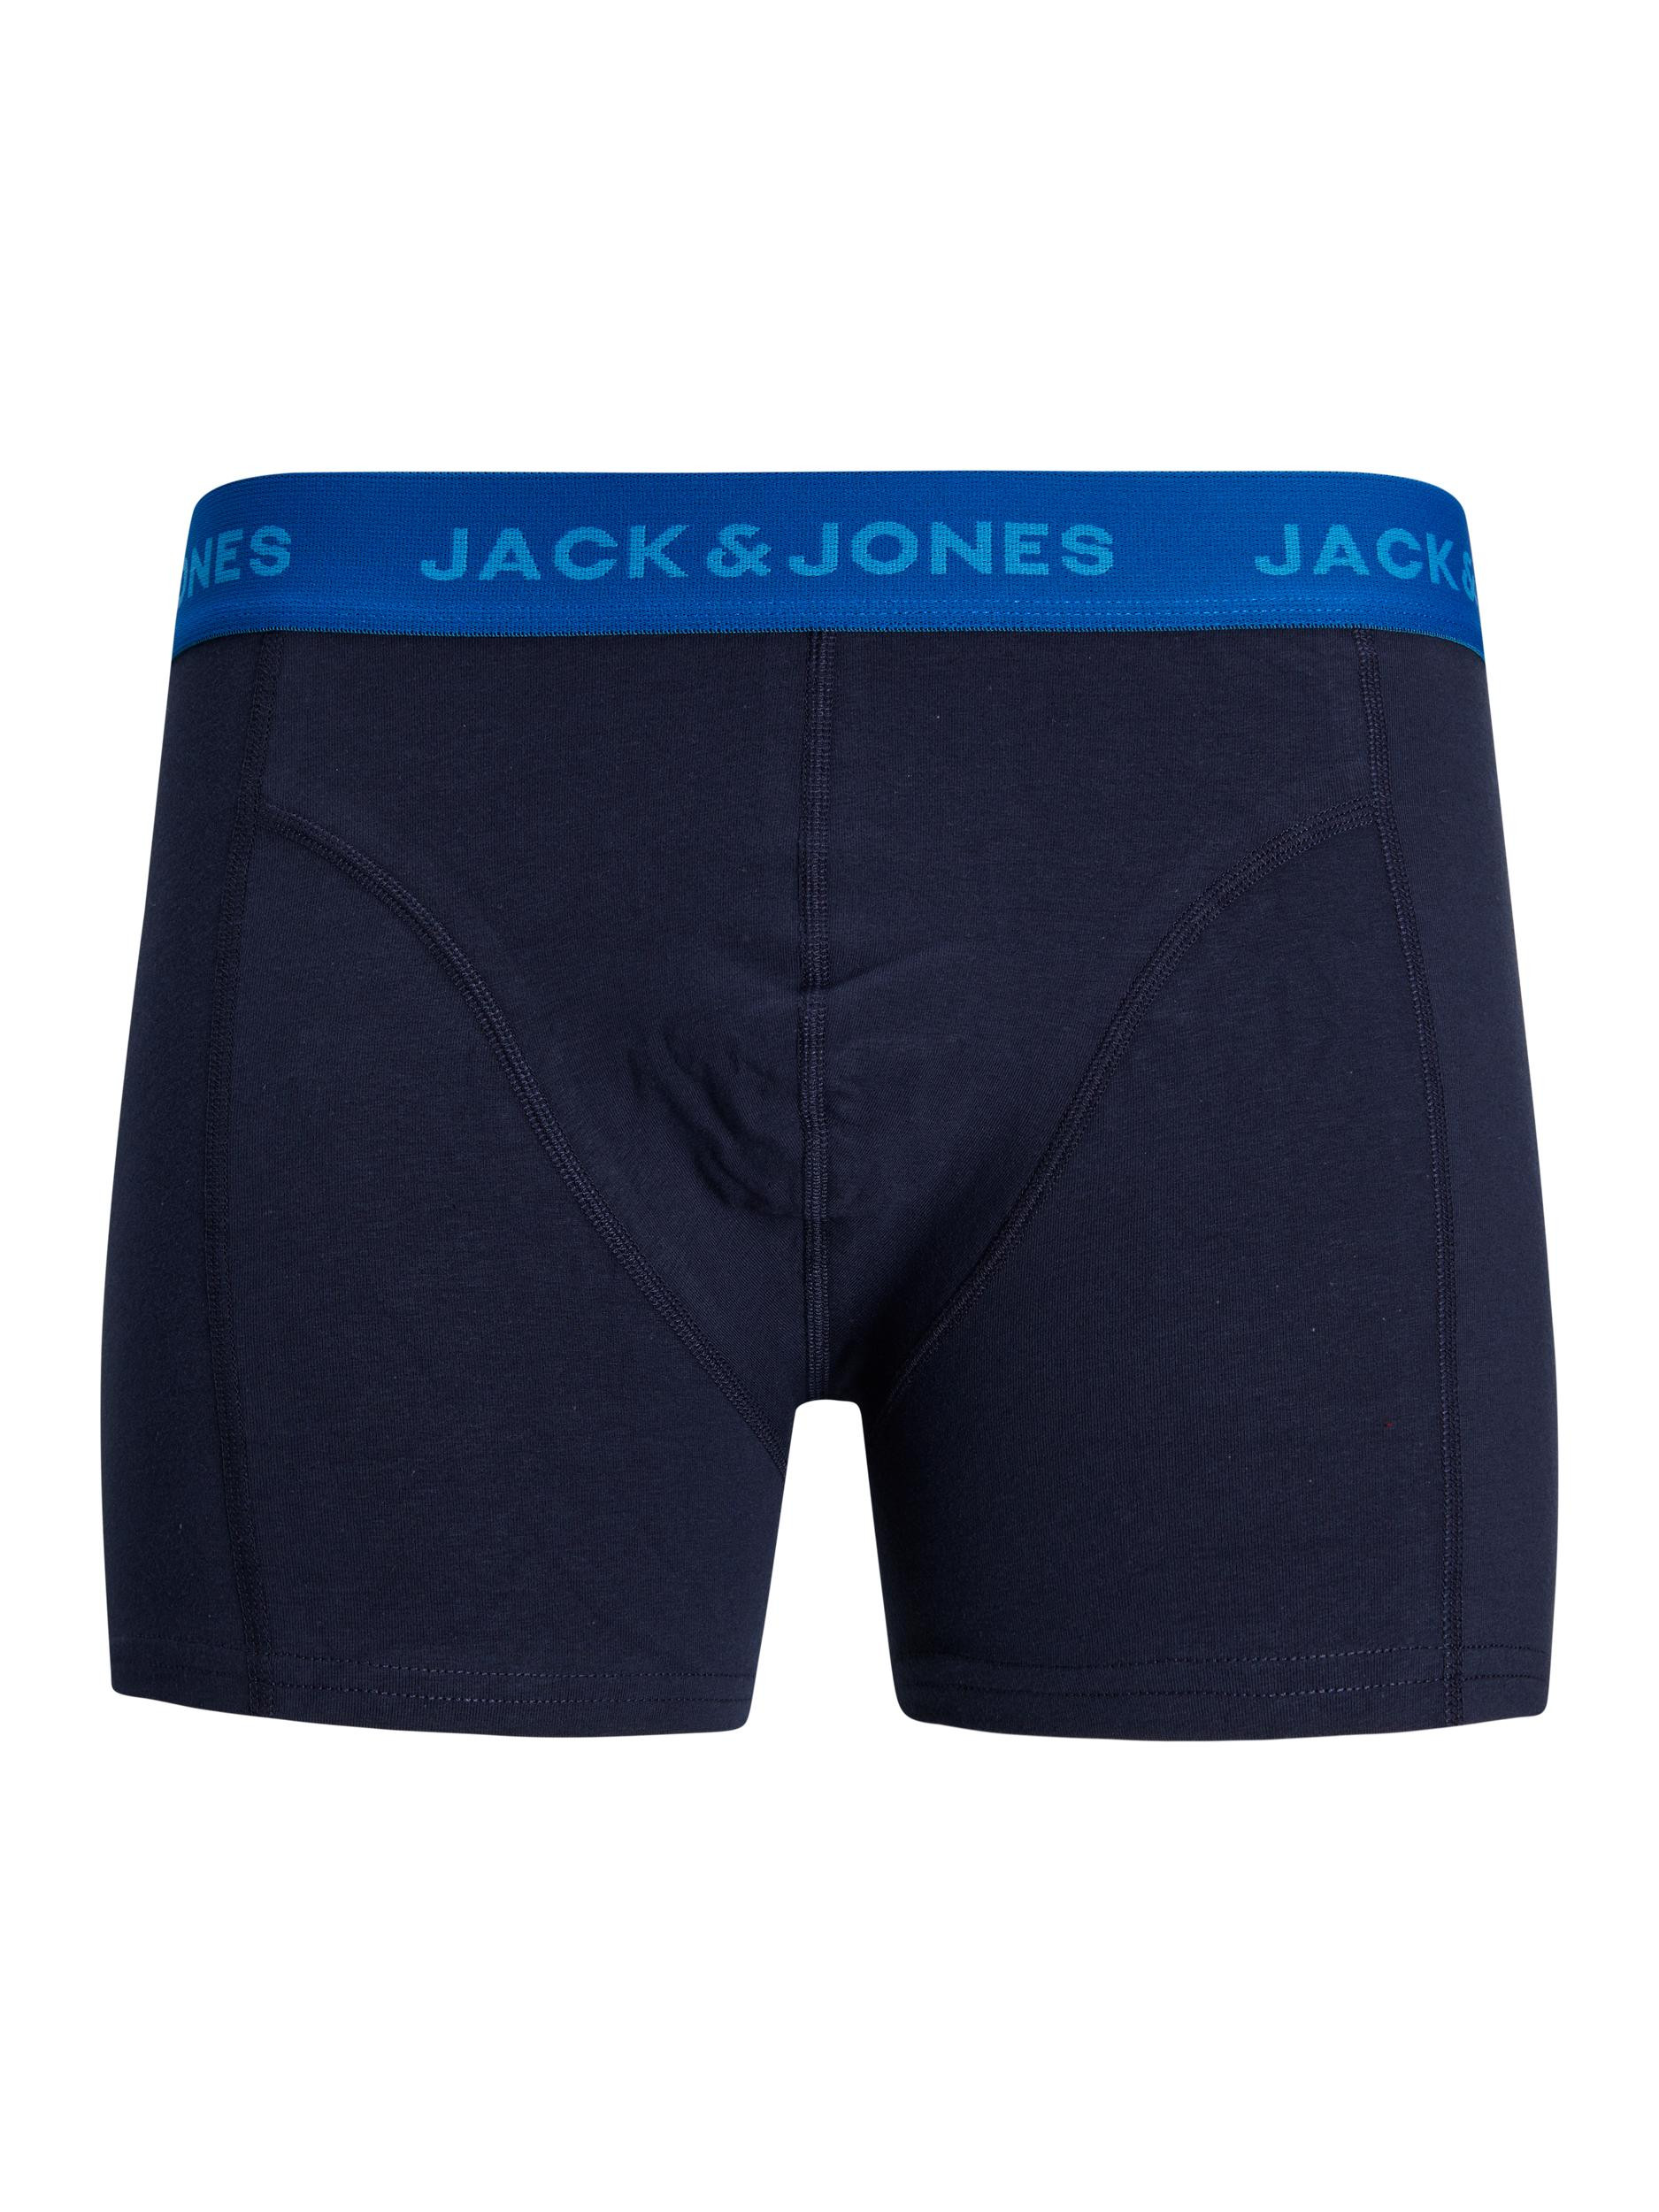 Afbeelding van Jack & Jones Jacjett trunks